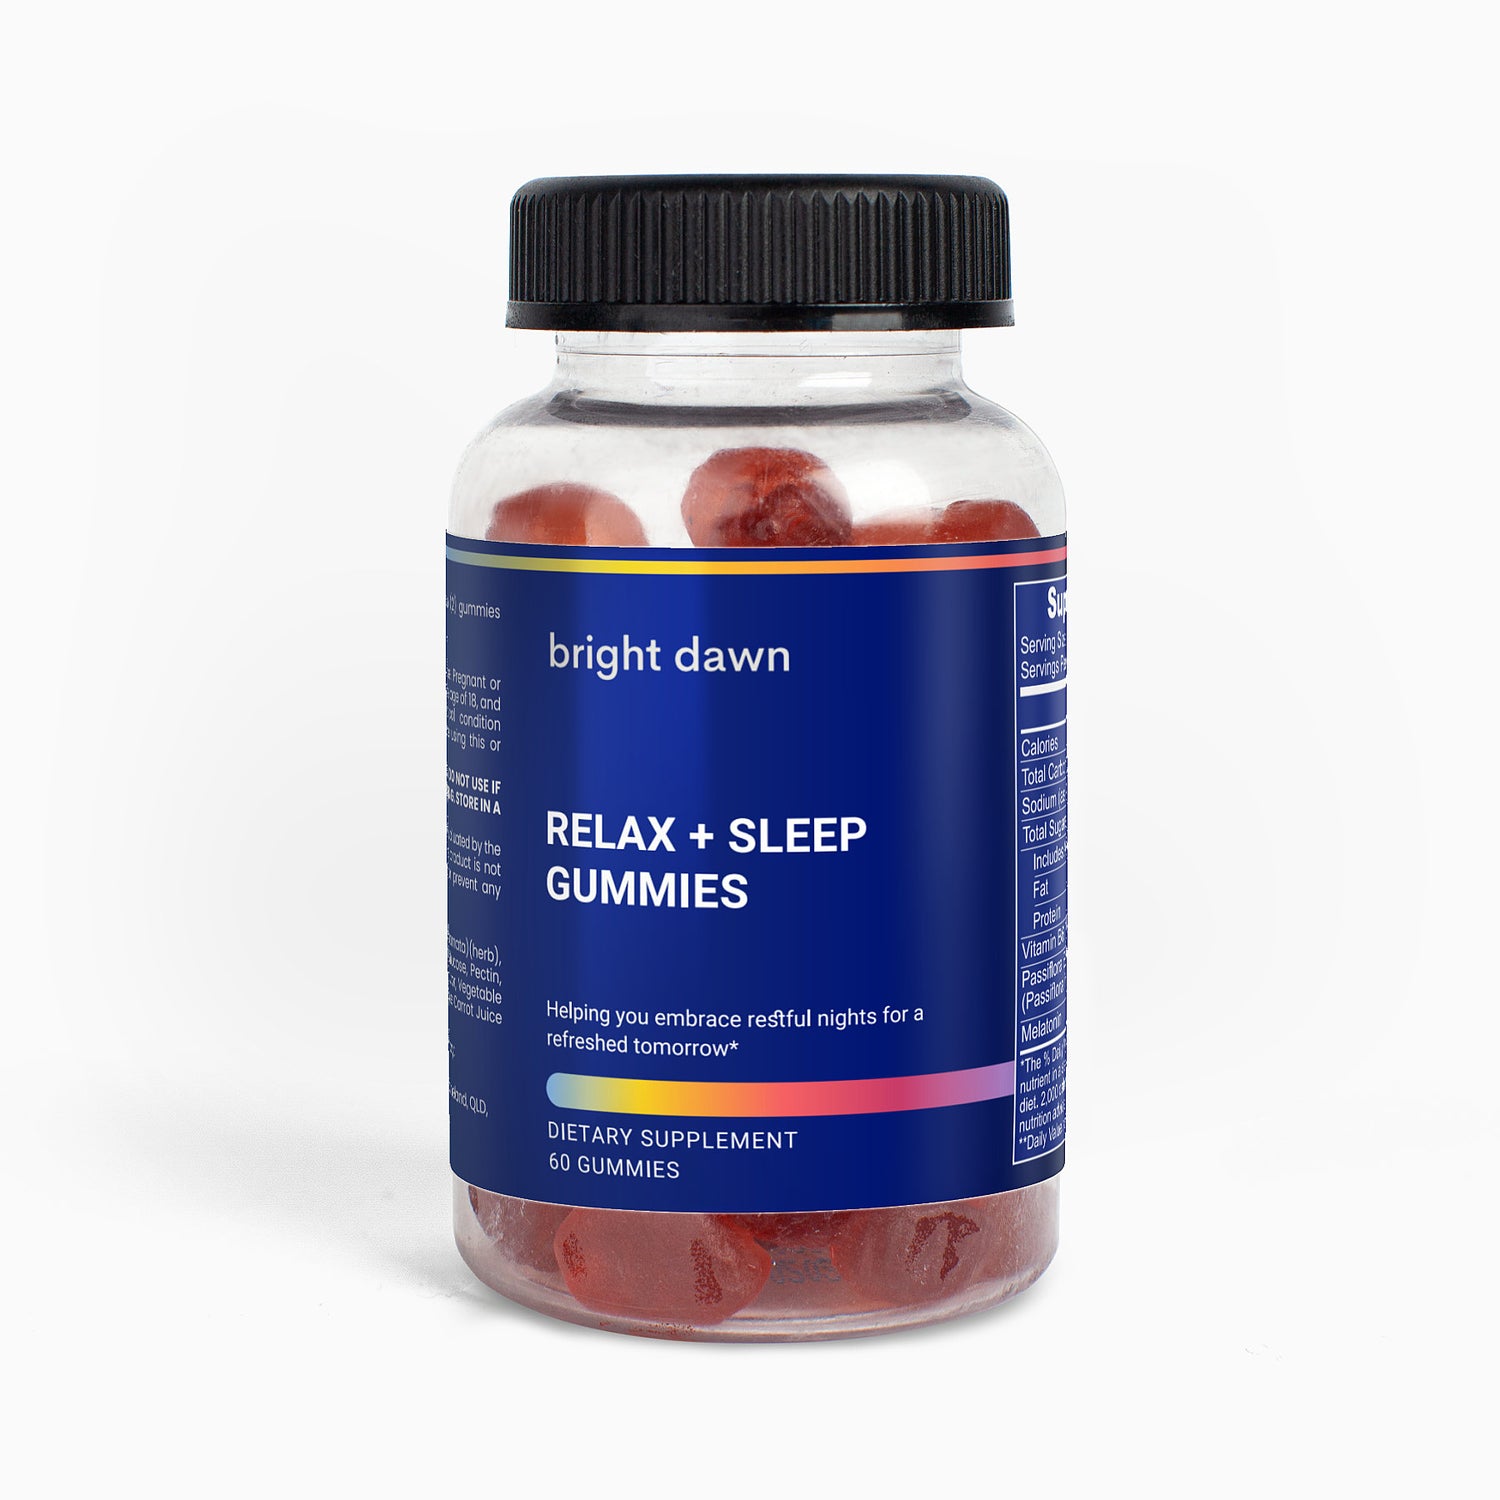 Relax + Sleep Gummies